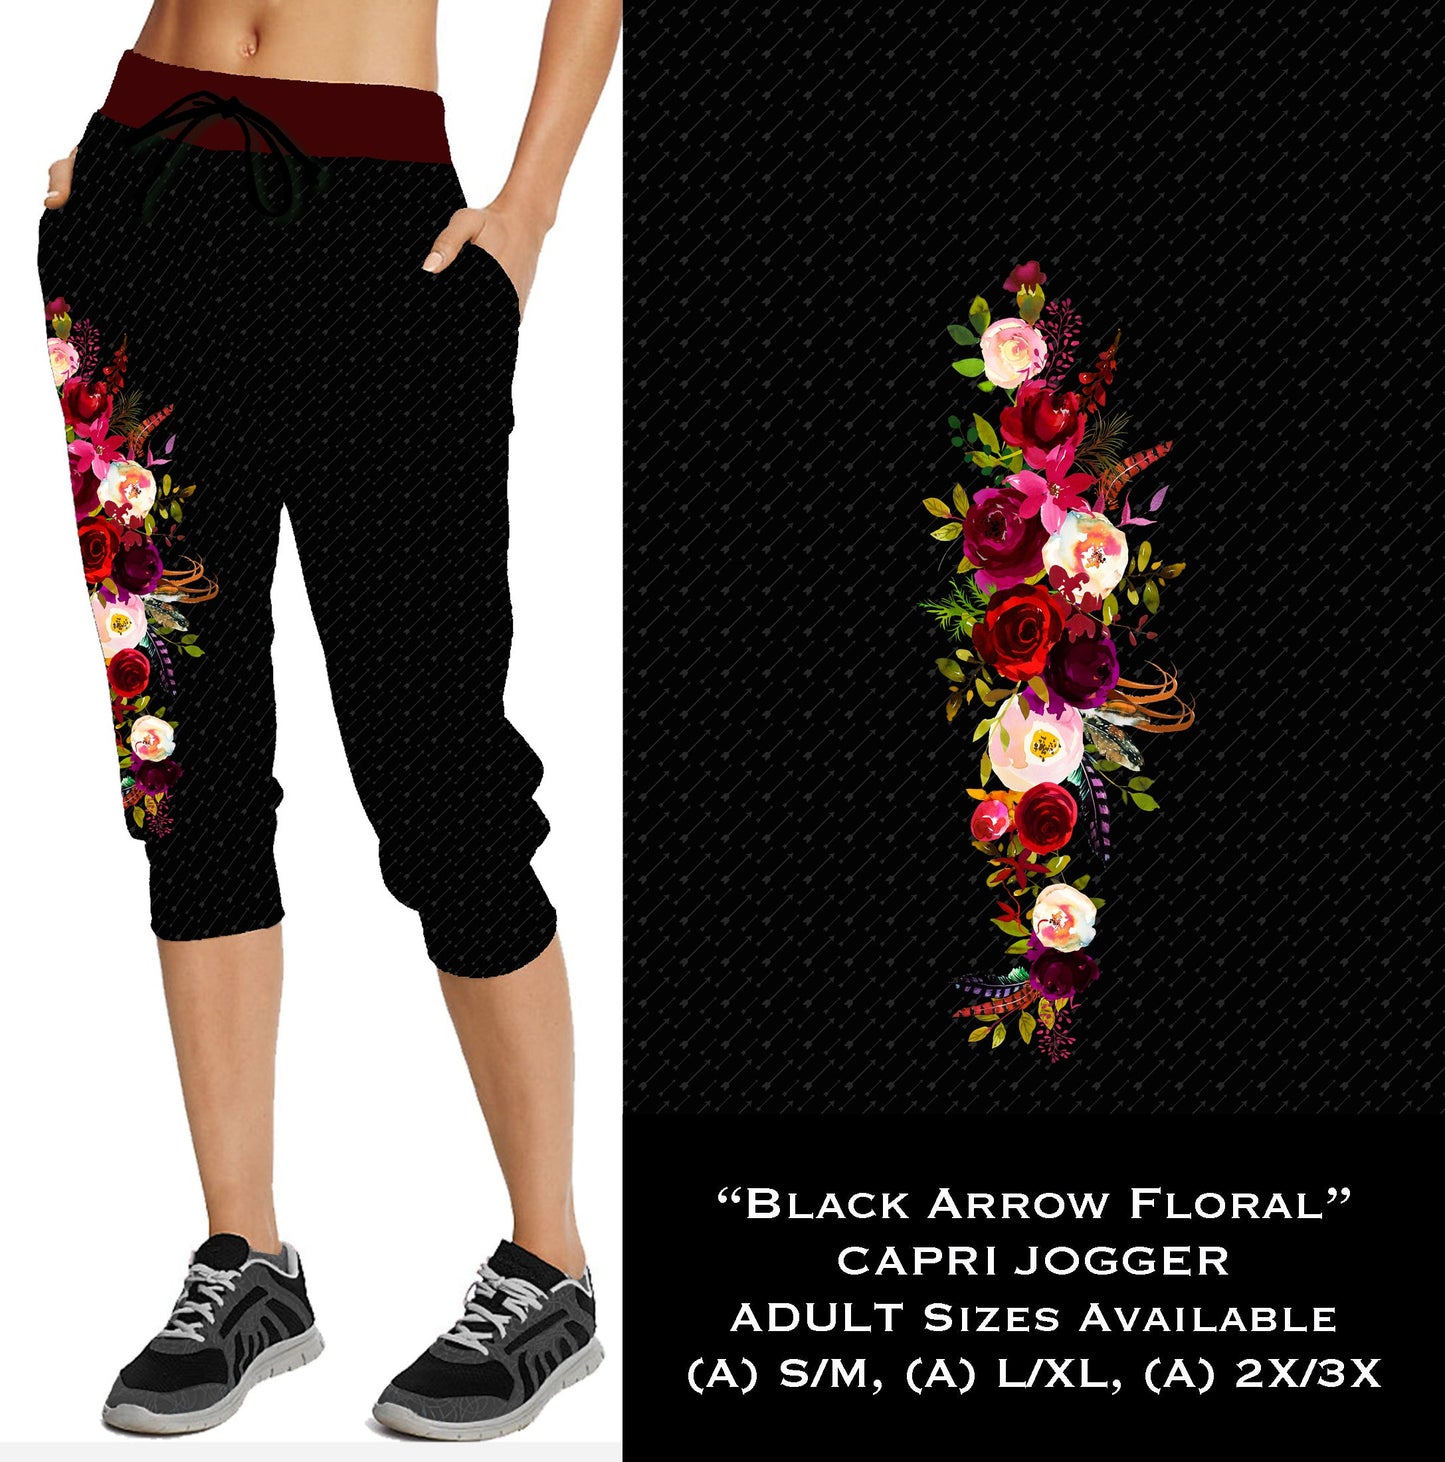 Black Arrow Floral - Capri Joggers